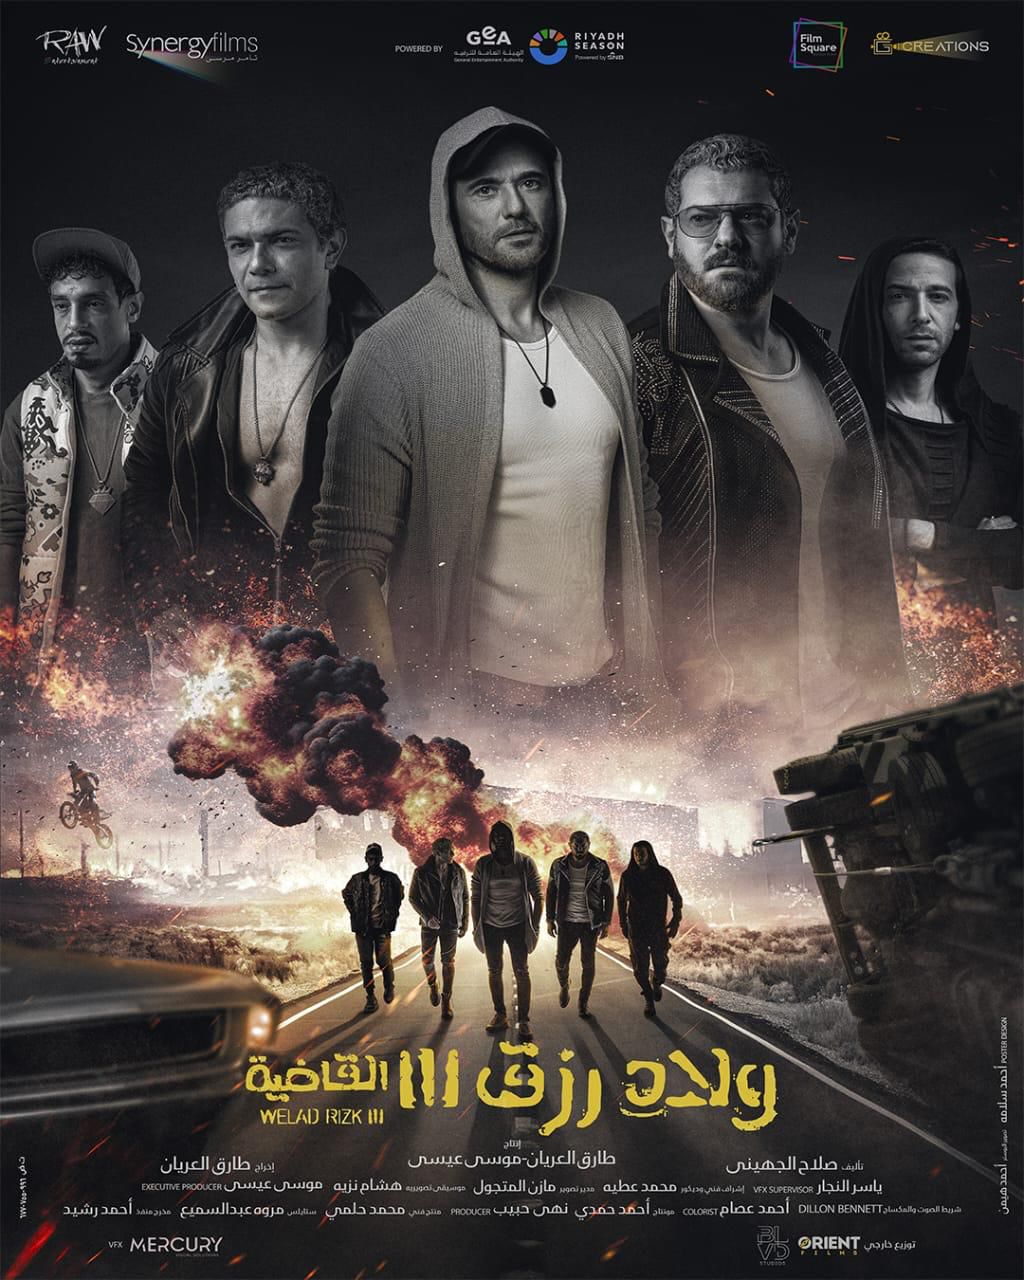 فيلم "ولاد رزق 3" يحطم الأرقام القياسية في السينما المصرية بأكثر من 18 مليون جنيه في يوم واحد